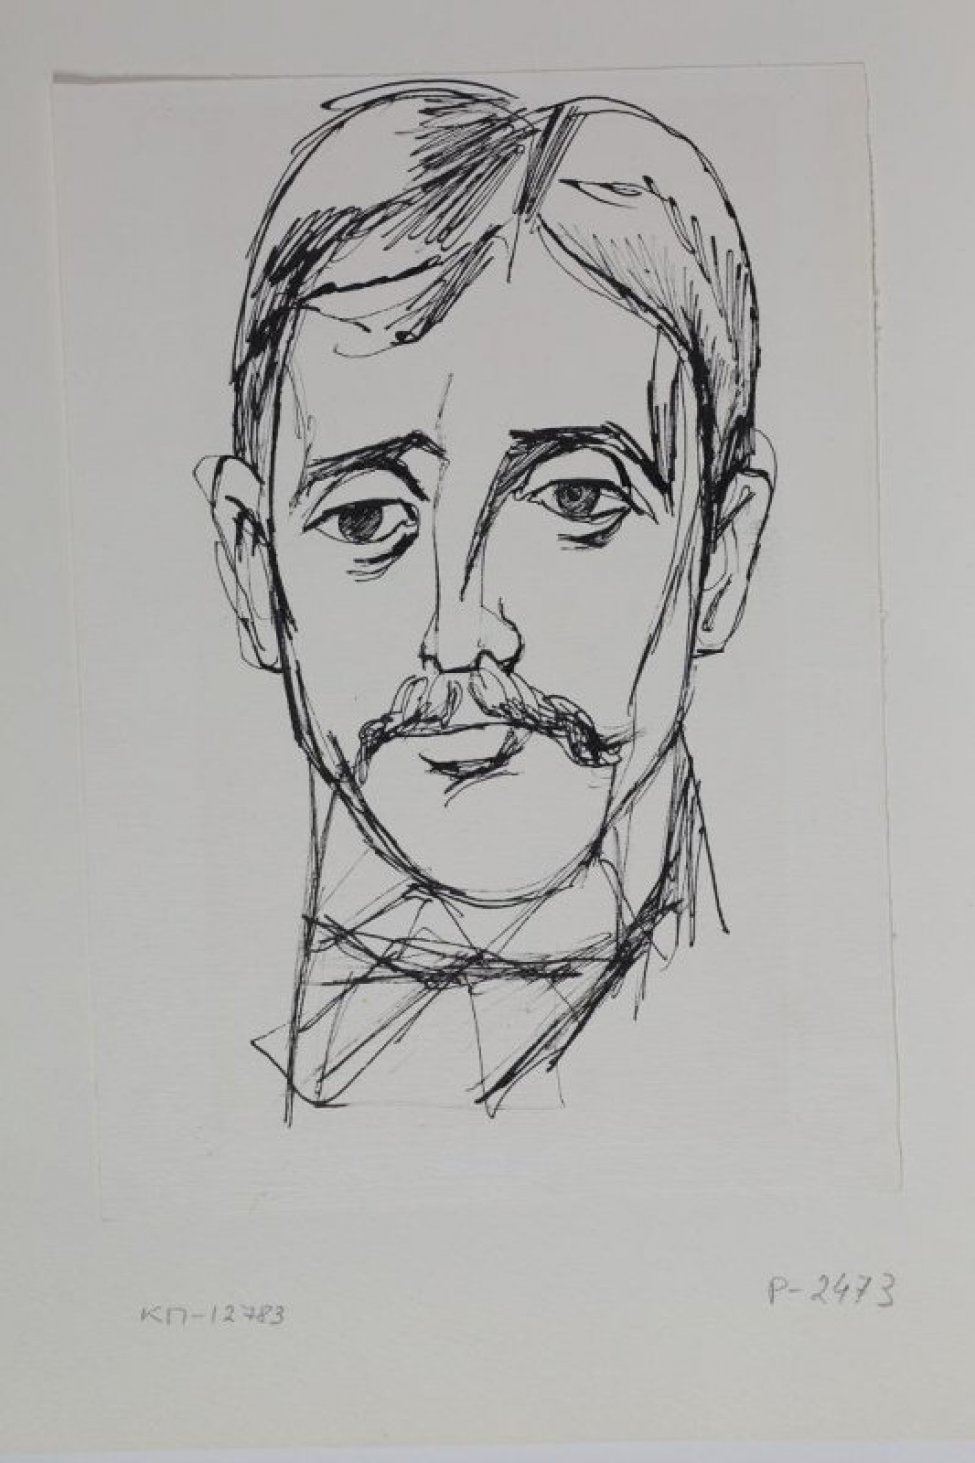 Изображена анфас голова мужчины; прическа на прямой пробор, волосы короткие, густые длинные усы.